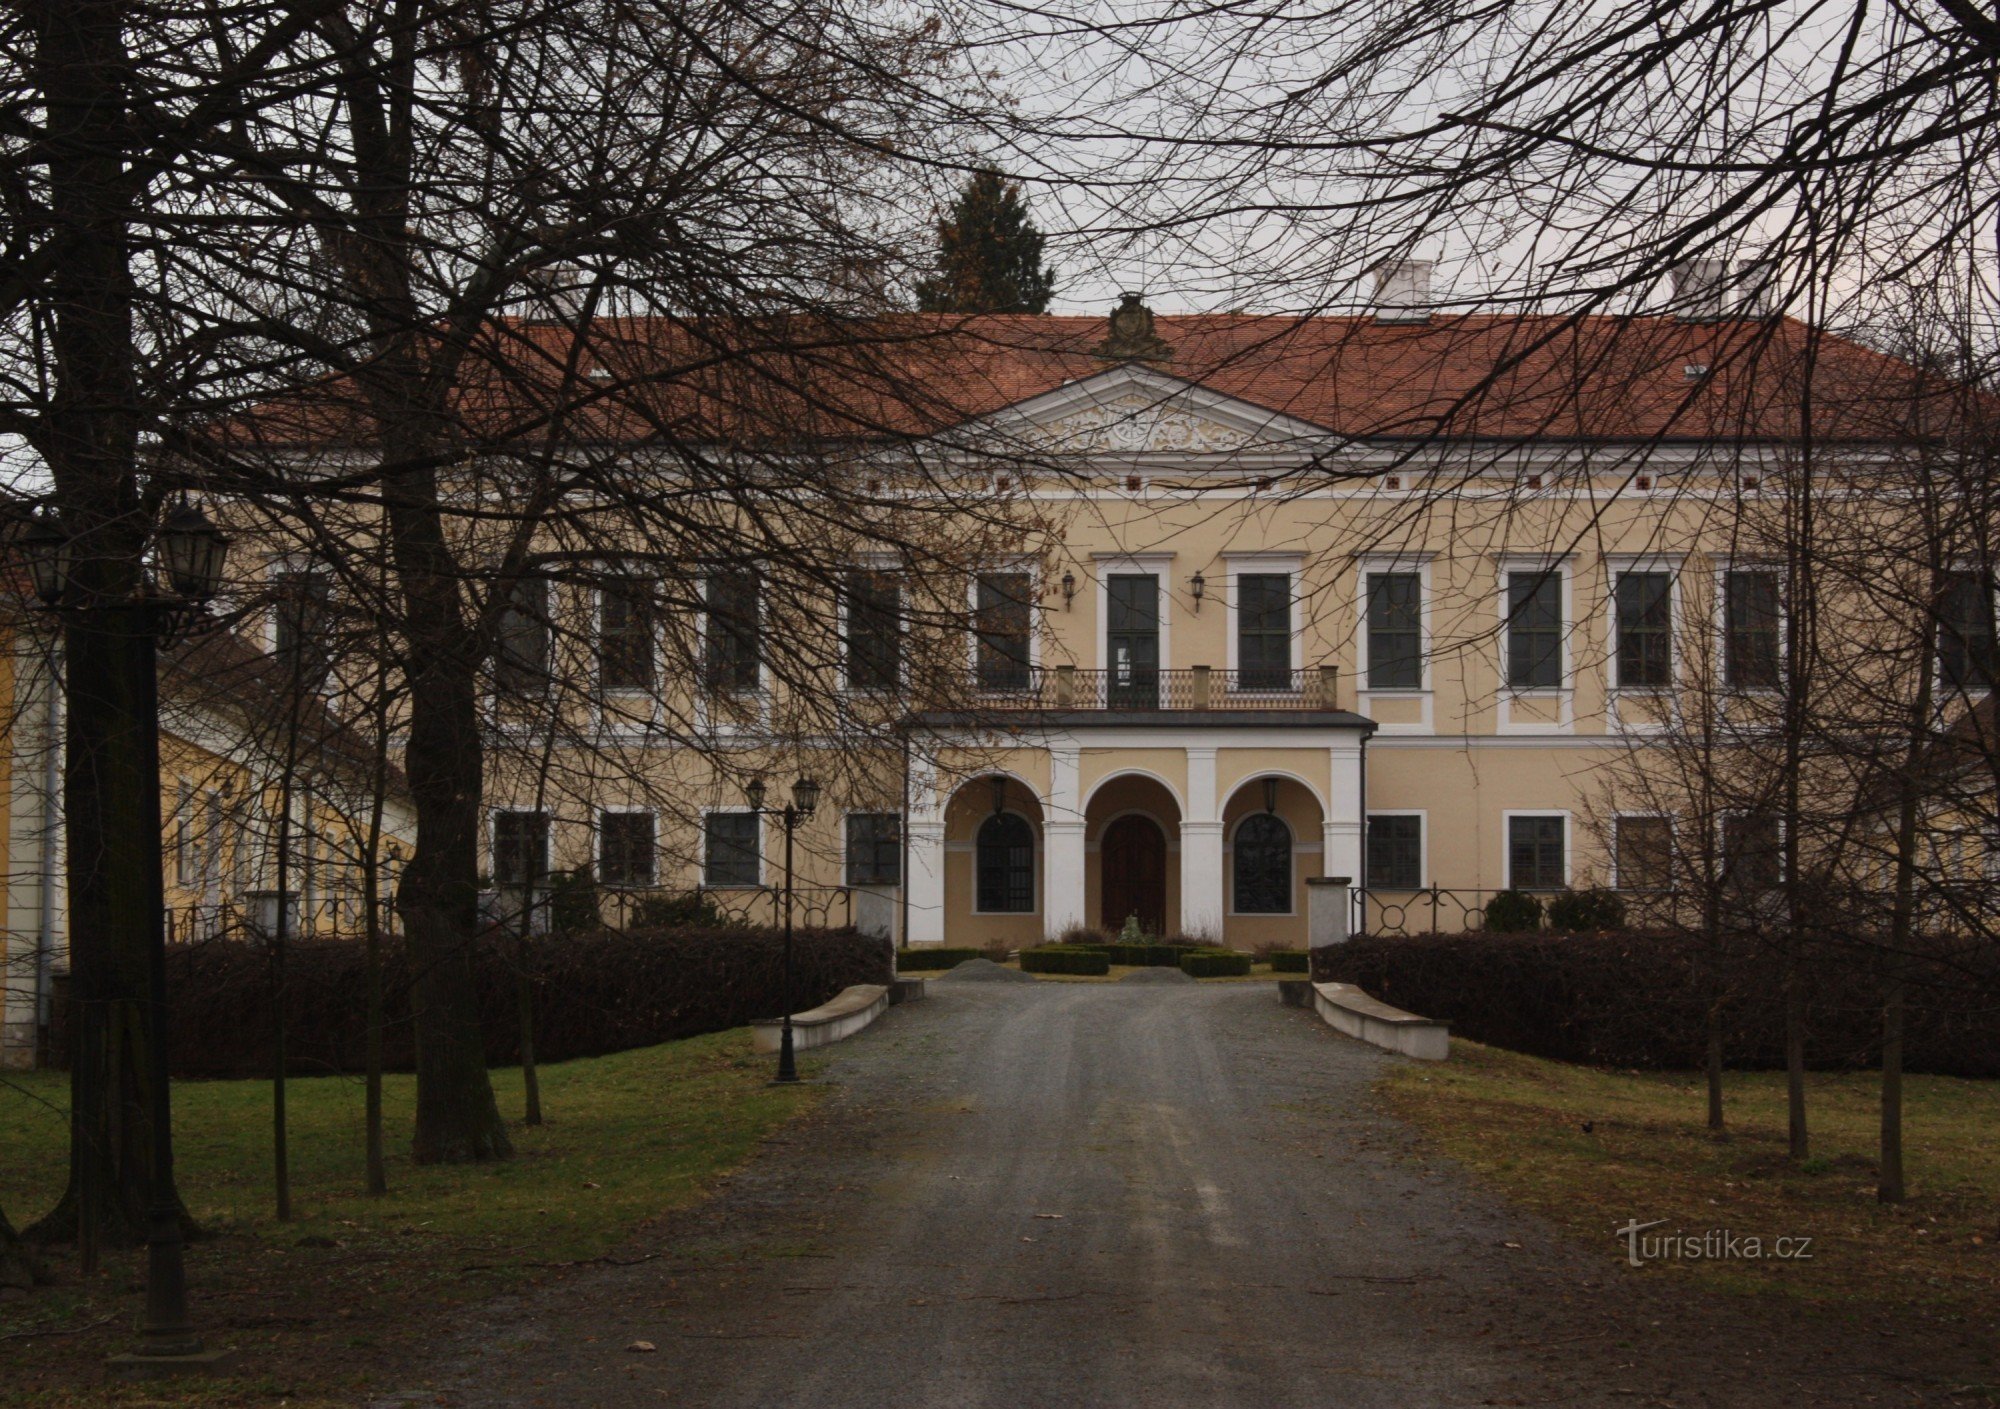 Originalmente uma residência rural barroca de 1707 a 1709 em Brodek perto de Prostějov